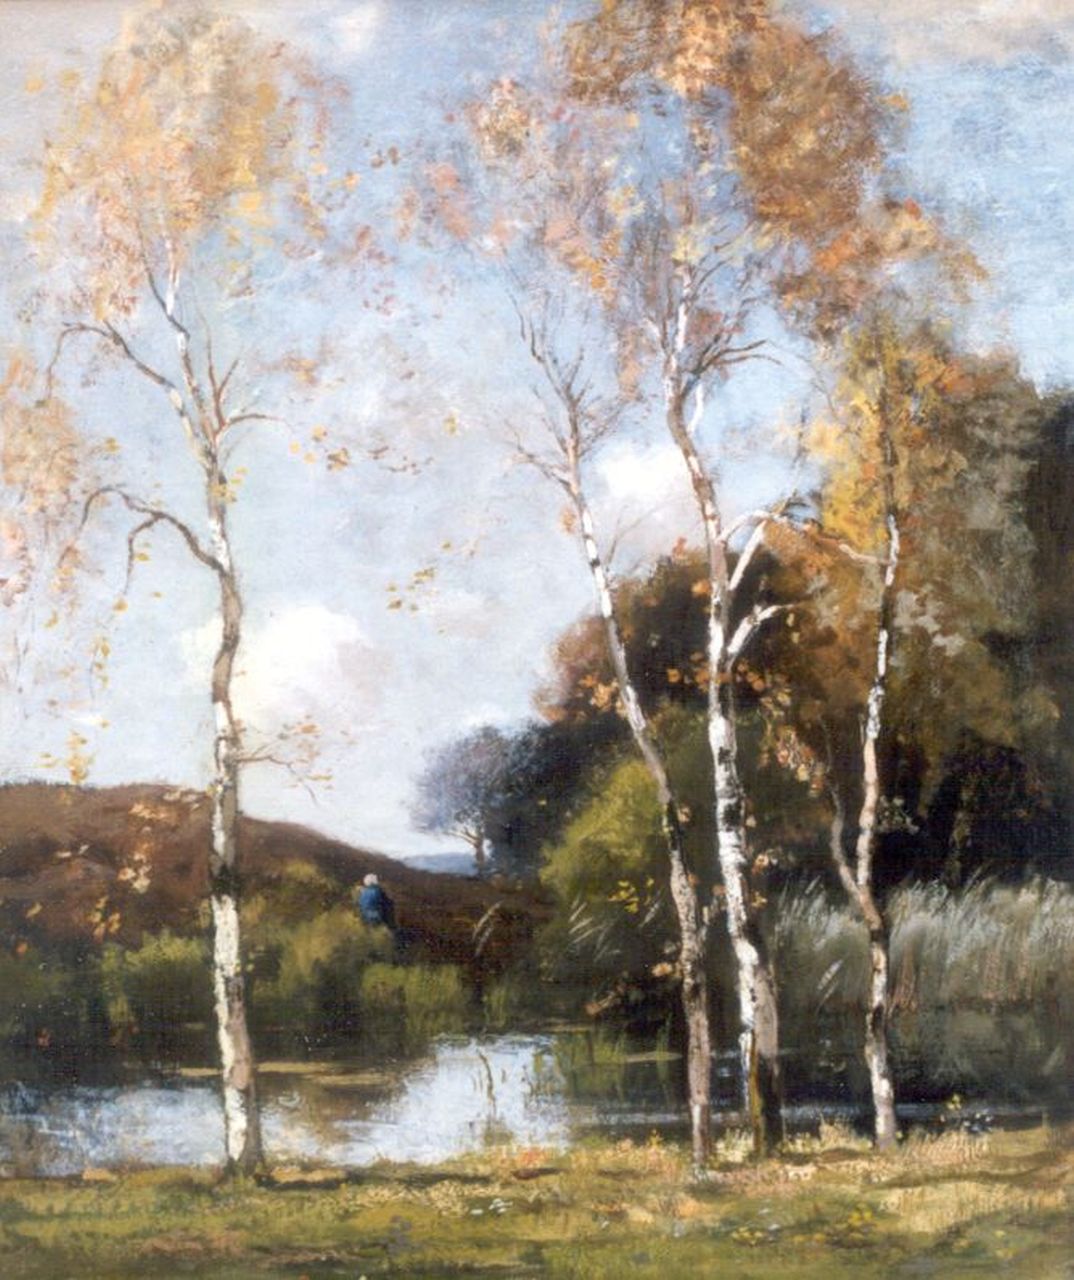 Bock T.E.A. de | Théophile Emile Achille de Bock, A forest pond, Öl auf Leinwand 81,5 x 61,0 cm, signed l.r.